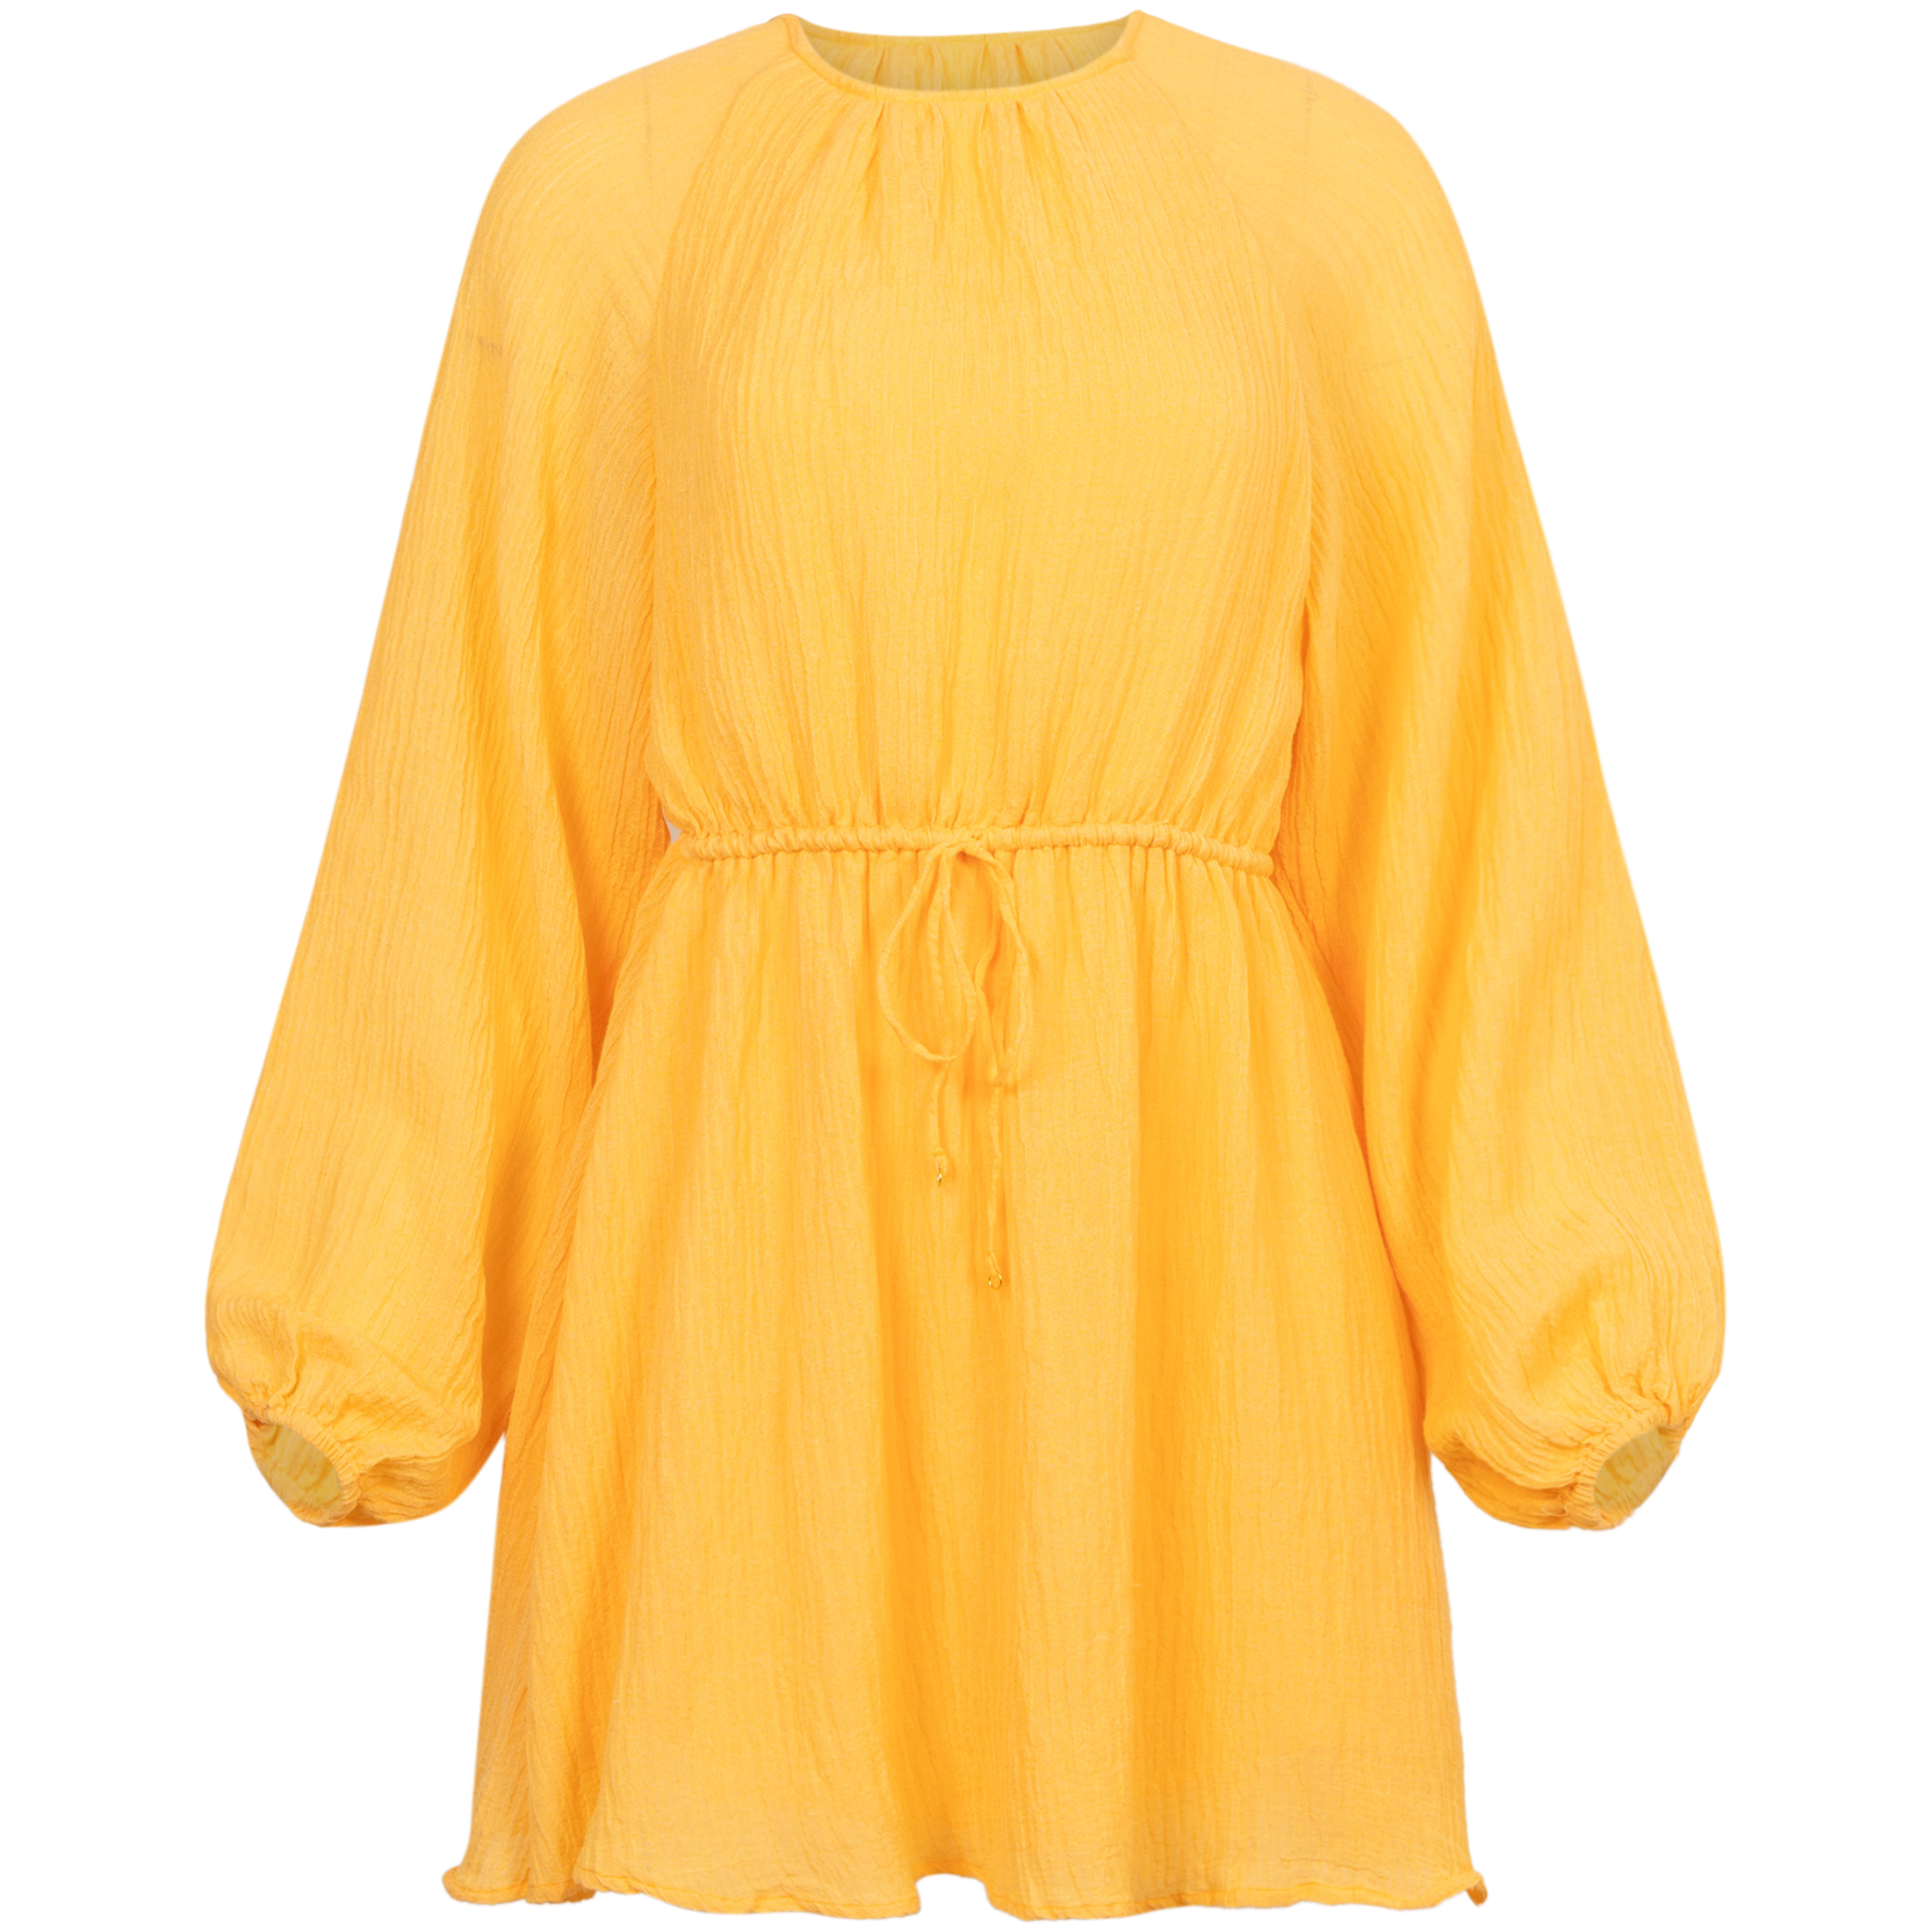 Constance Mini Dress - Saffron